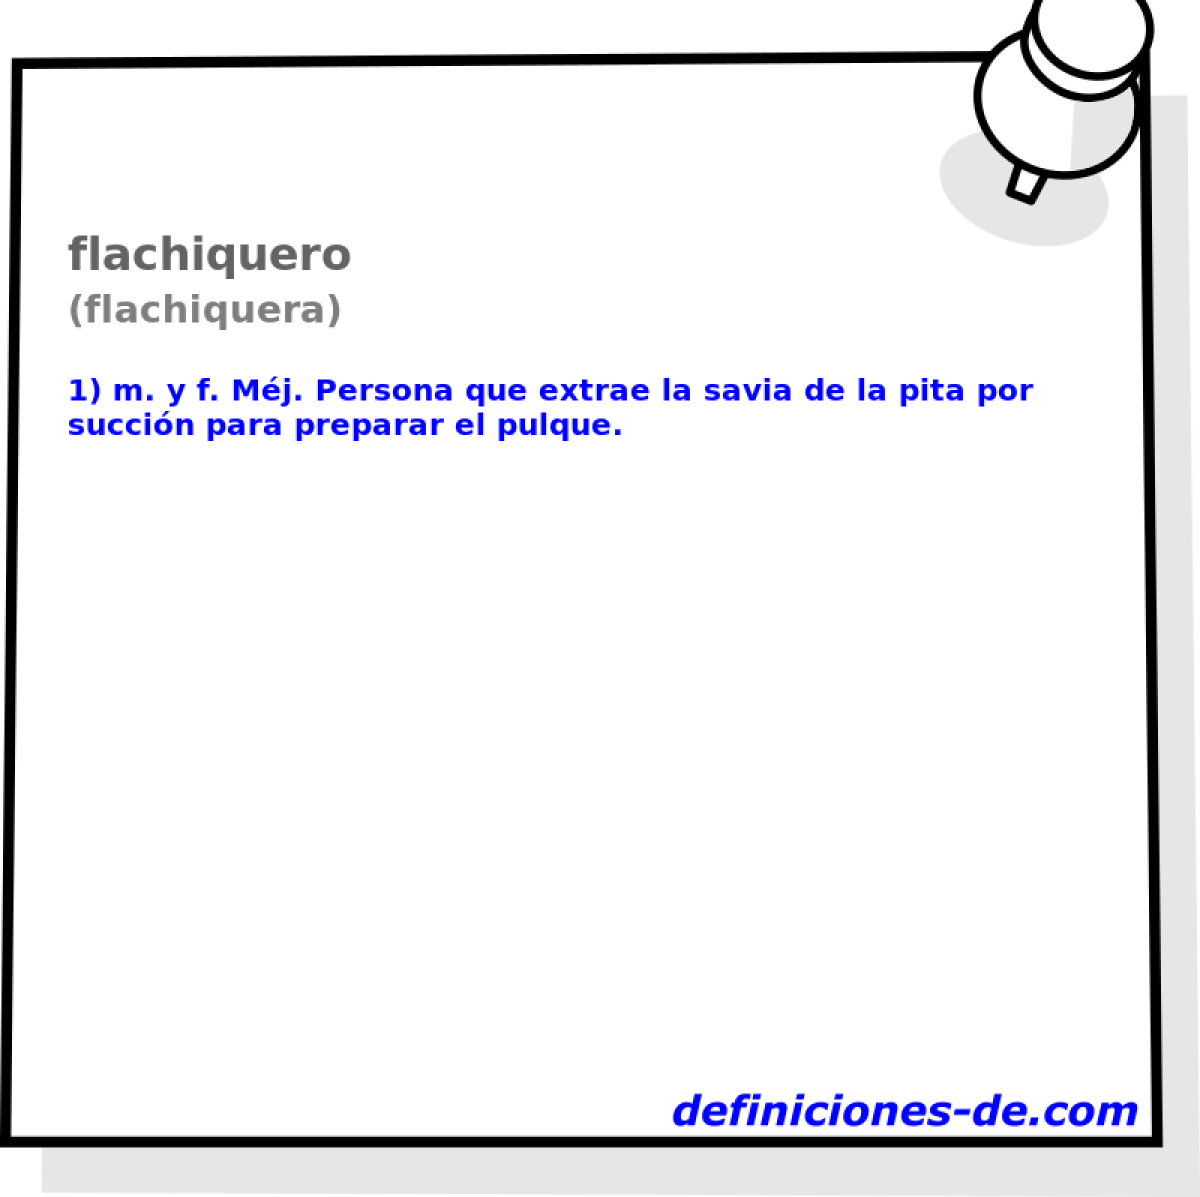 flachiquero (flachiquera)